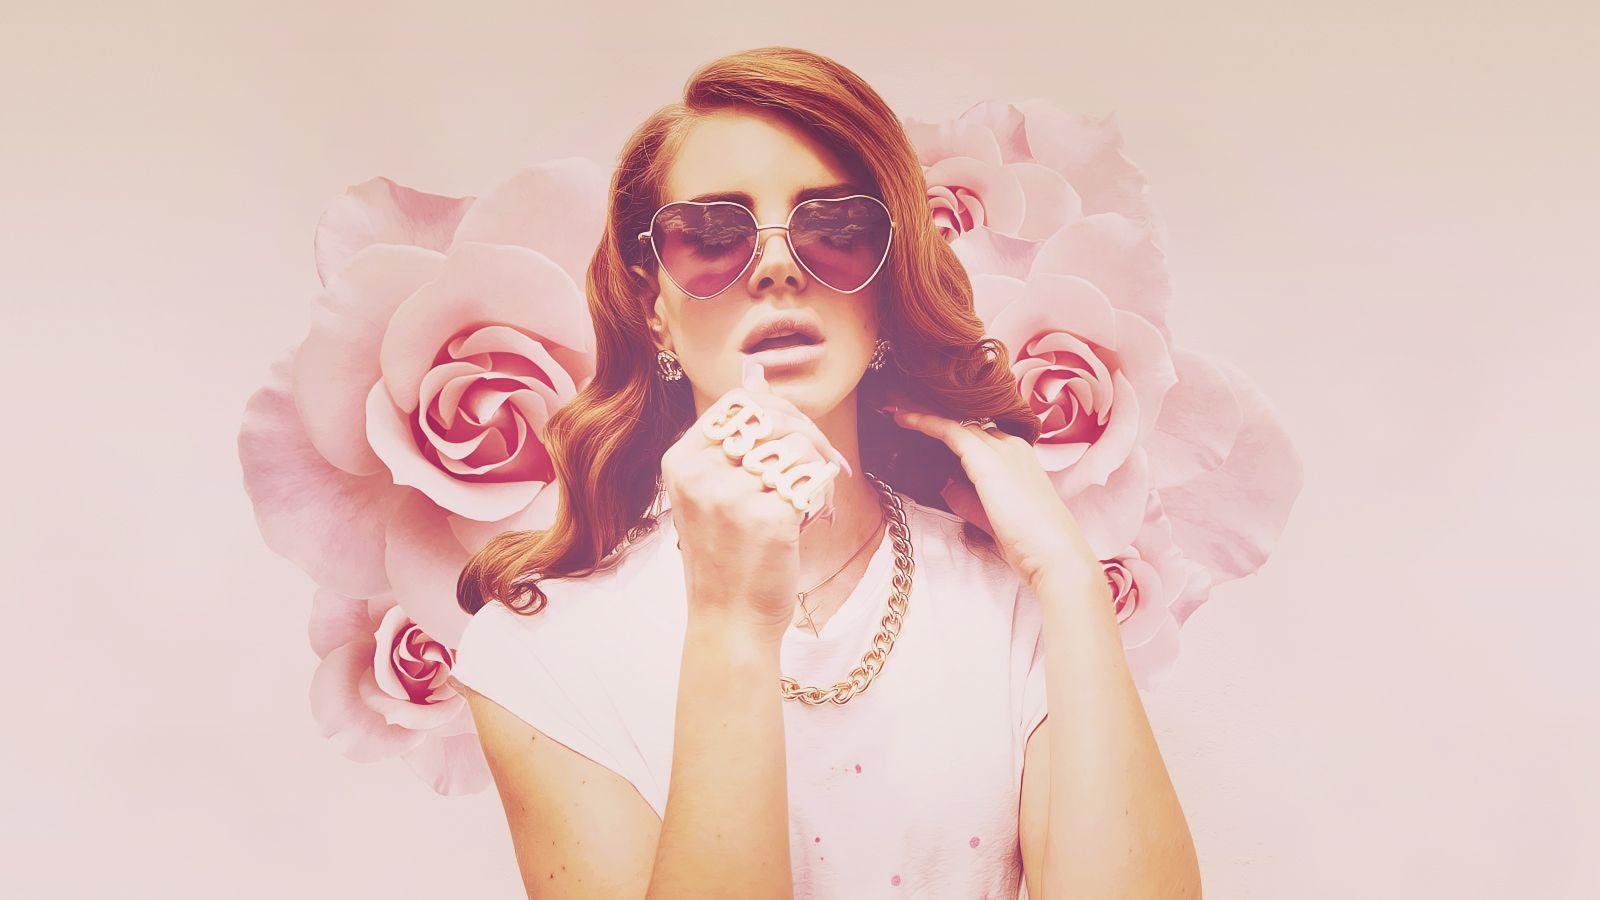 Singer Lana Del Rey Wallpaper